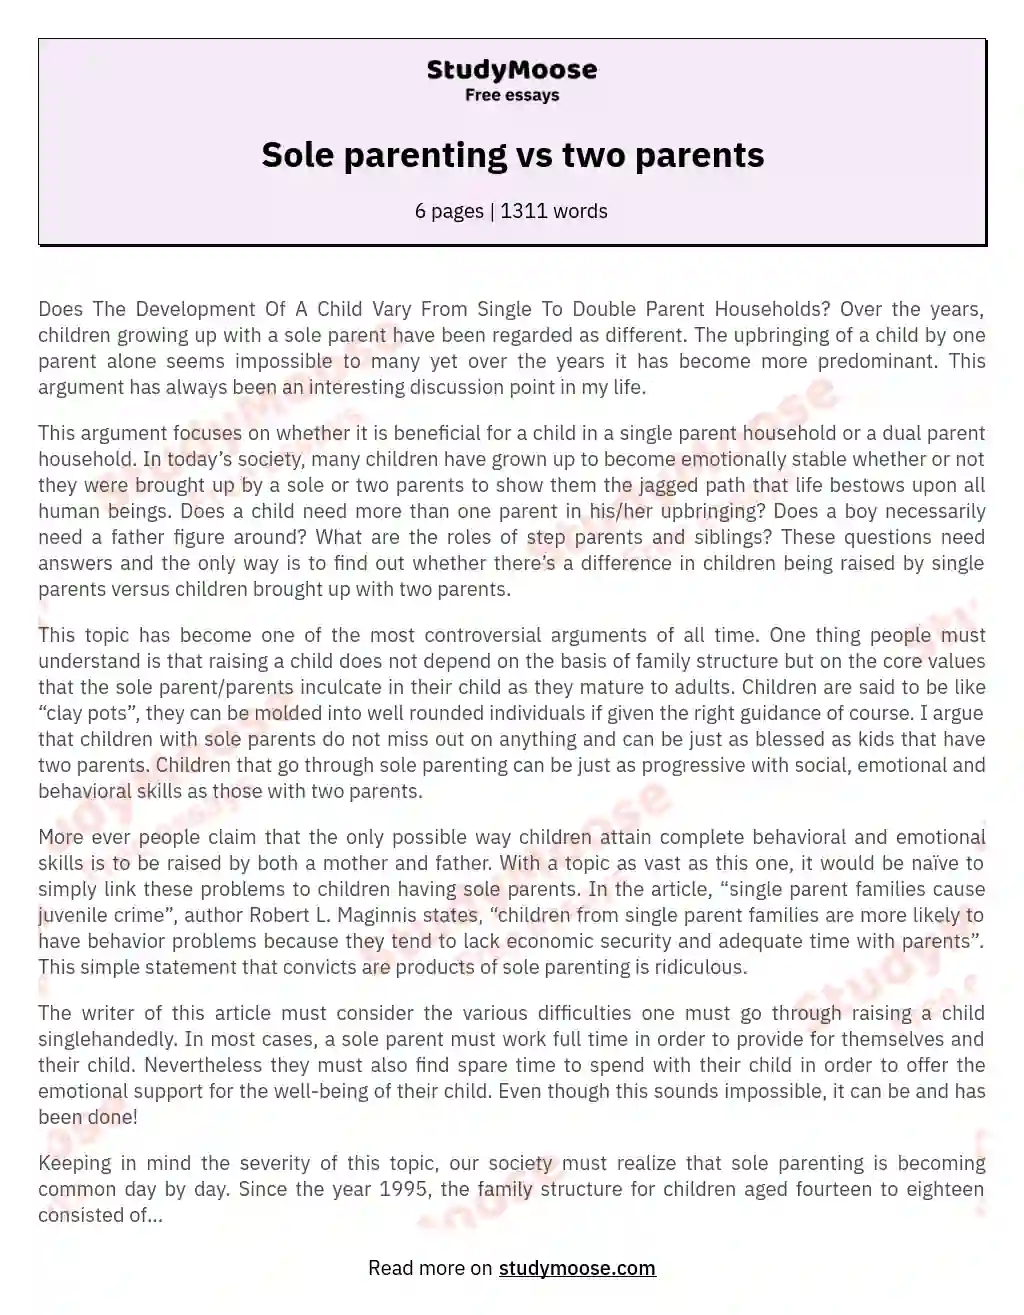 Sole parenting vs two parents essay